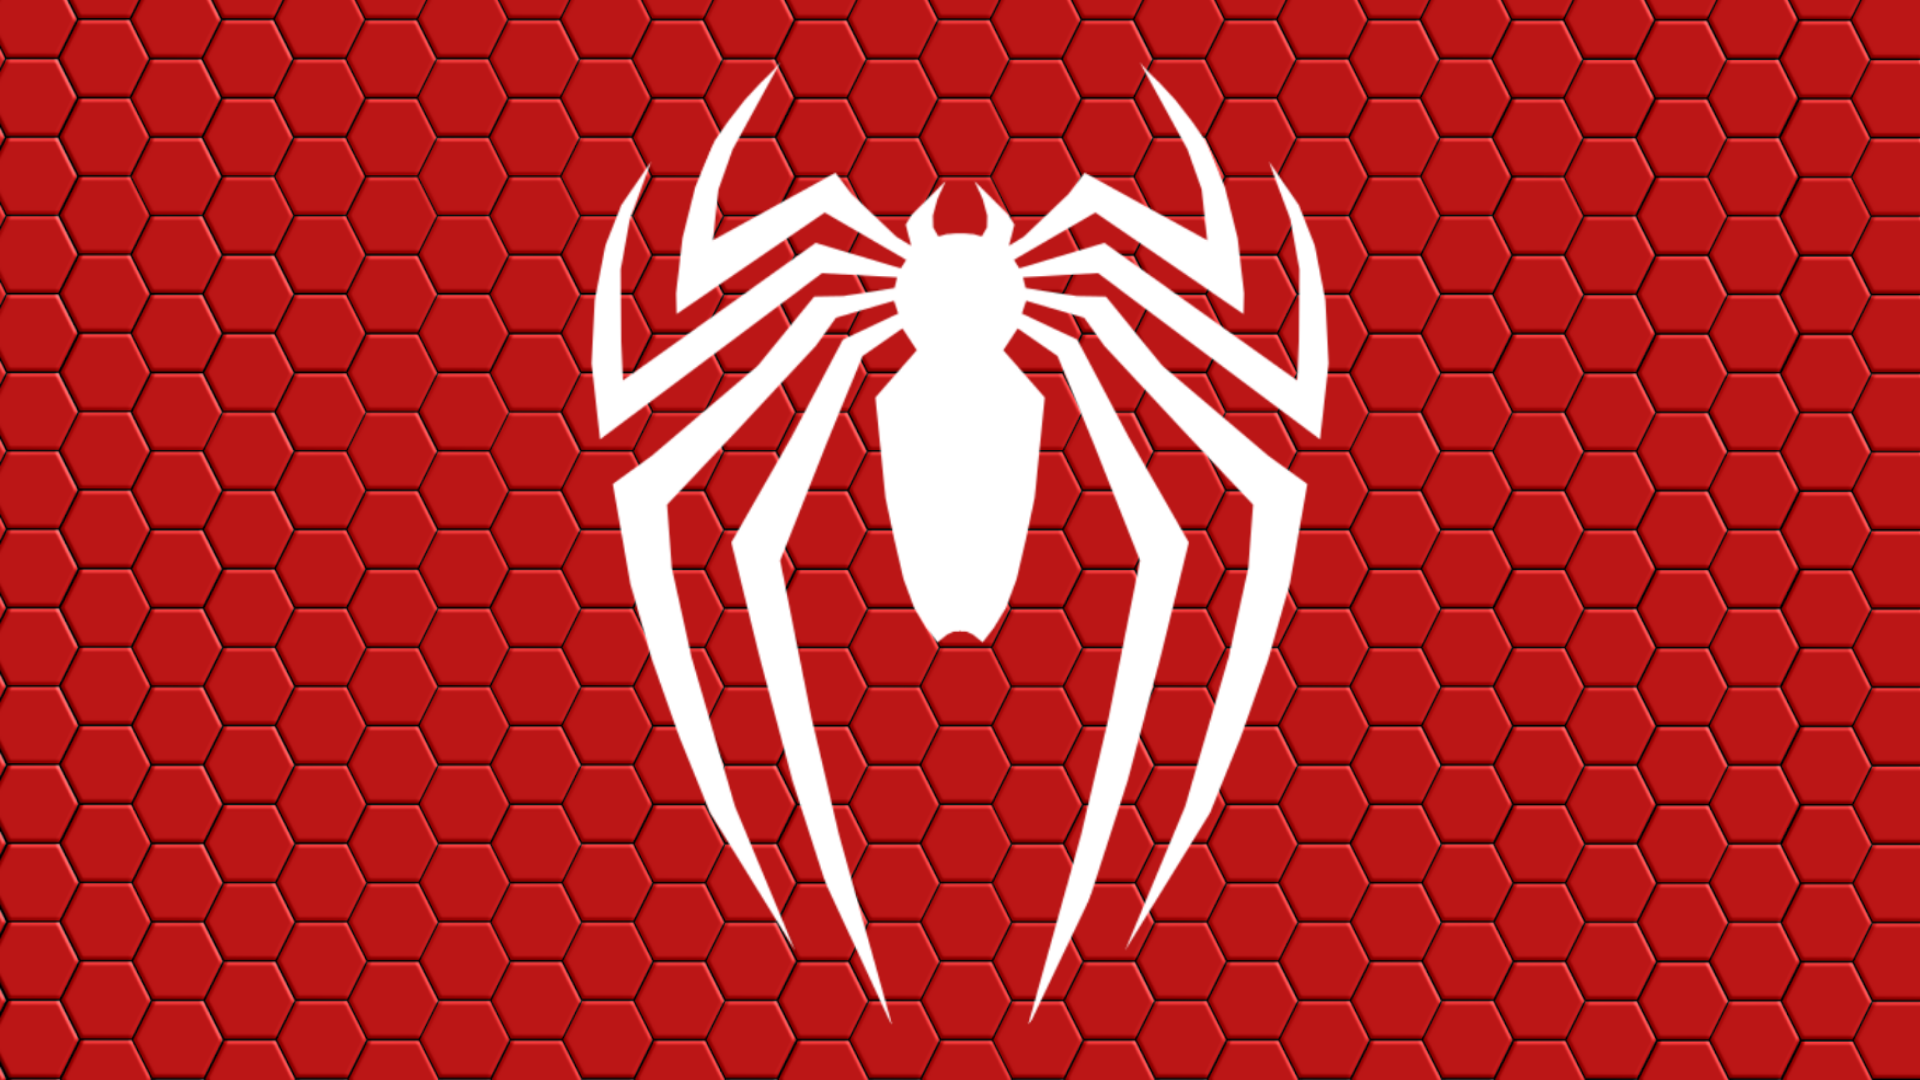 Homem Aranha Logo